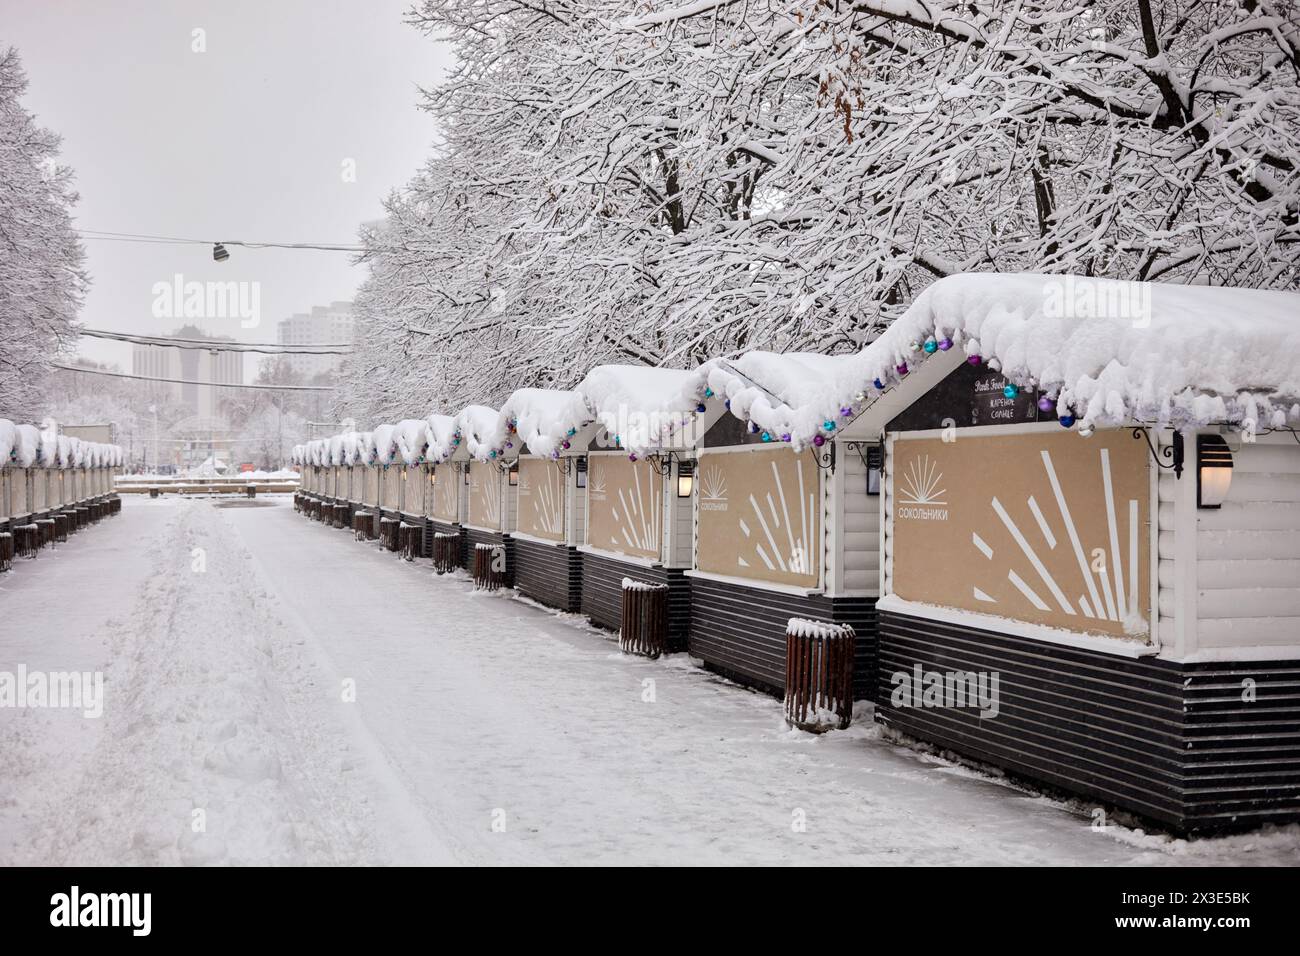 MOSCOU, RUSSIE - 31 janvier 2018 : rangées de stands de concession en plein air dans le parc Sokolniki le jour neigeux d'hiver. Banque D'Images